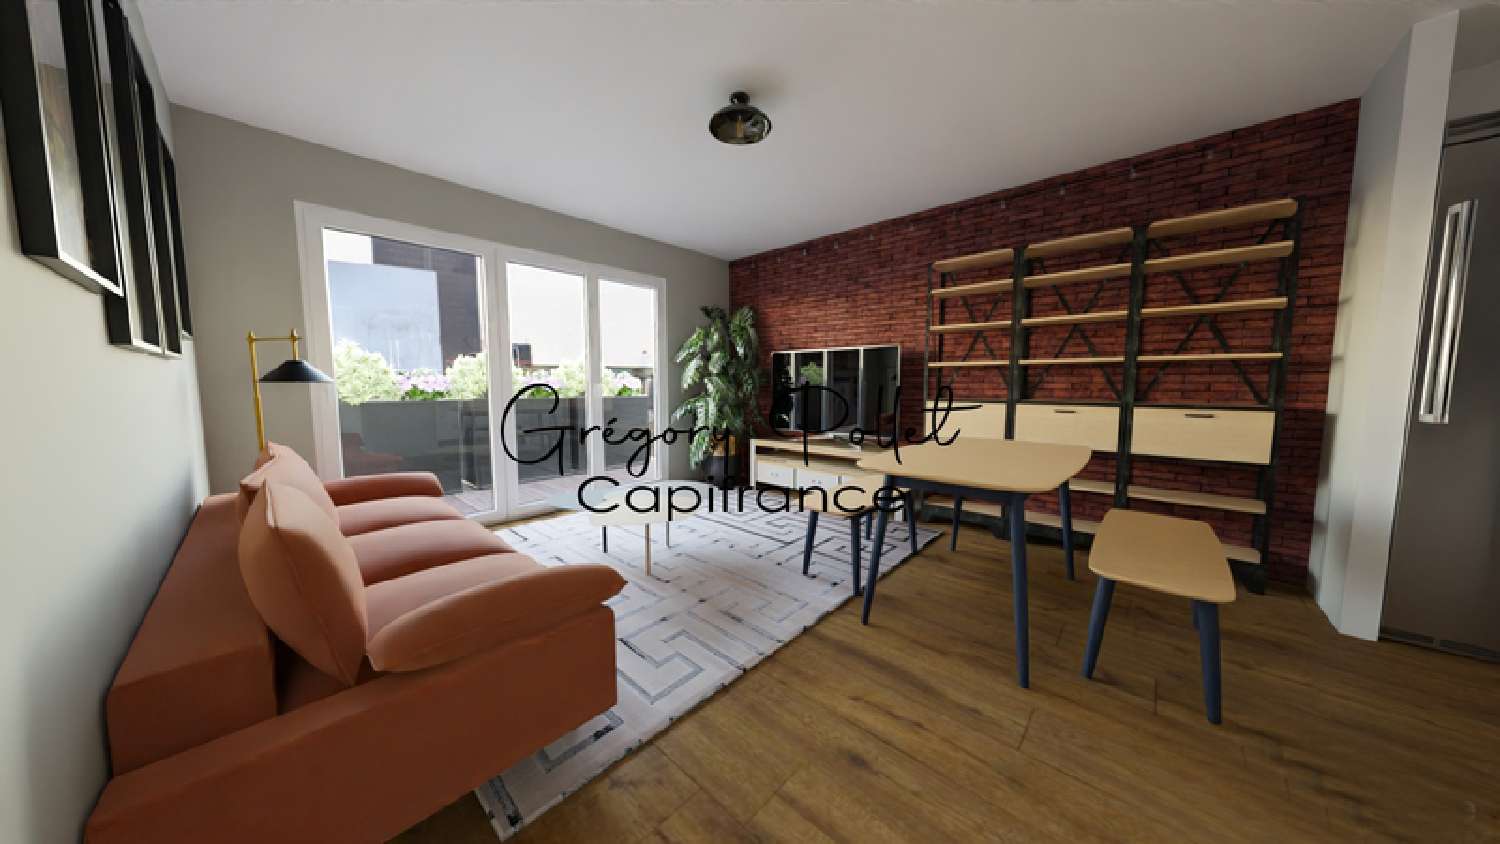 Arques Pas-de-Calais Wohnung/ Apartment Bild 6447604